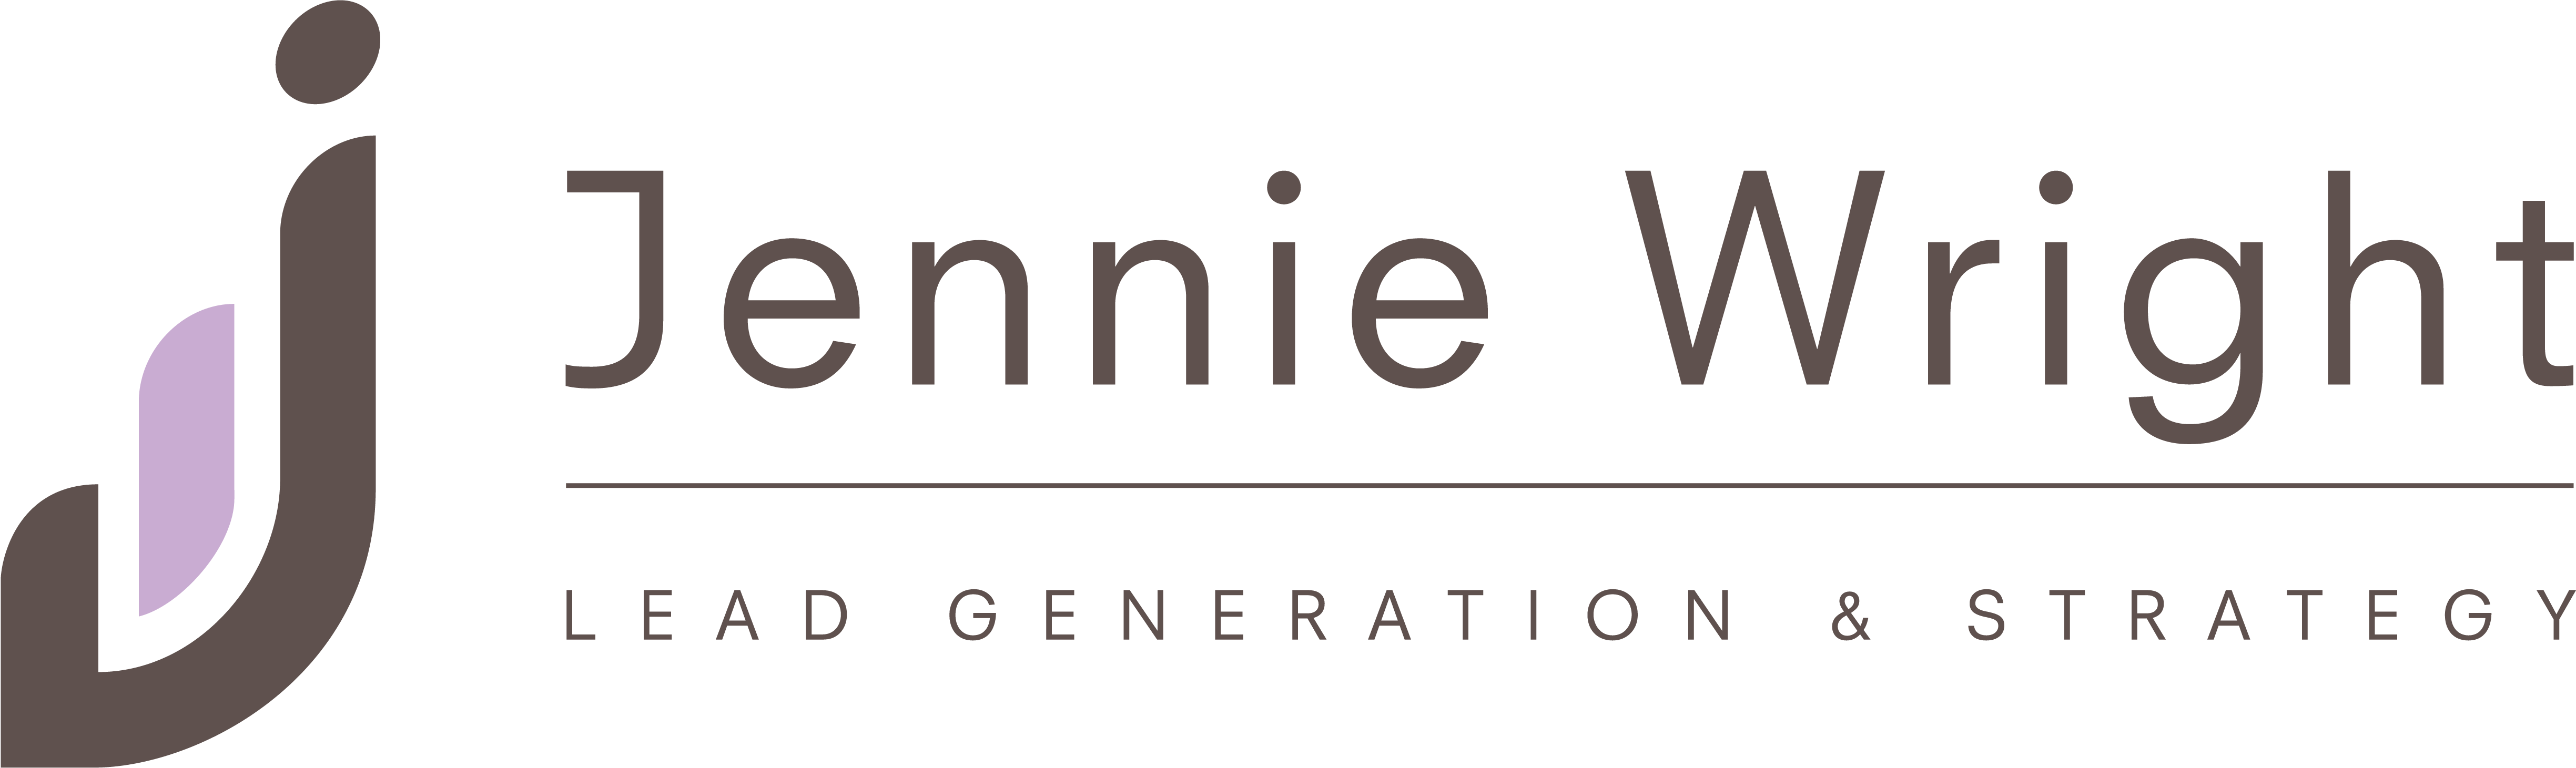 Jennie wright Logo Colour inline